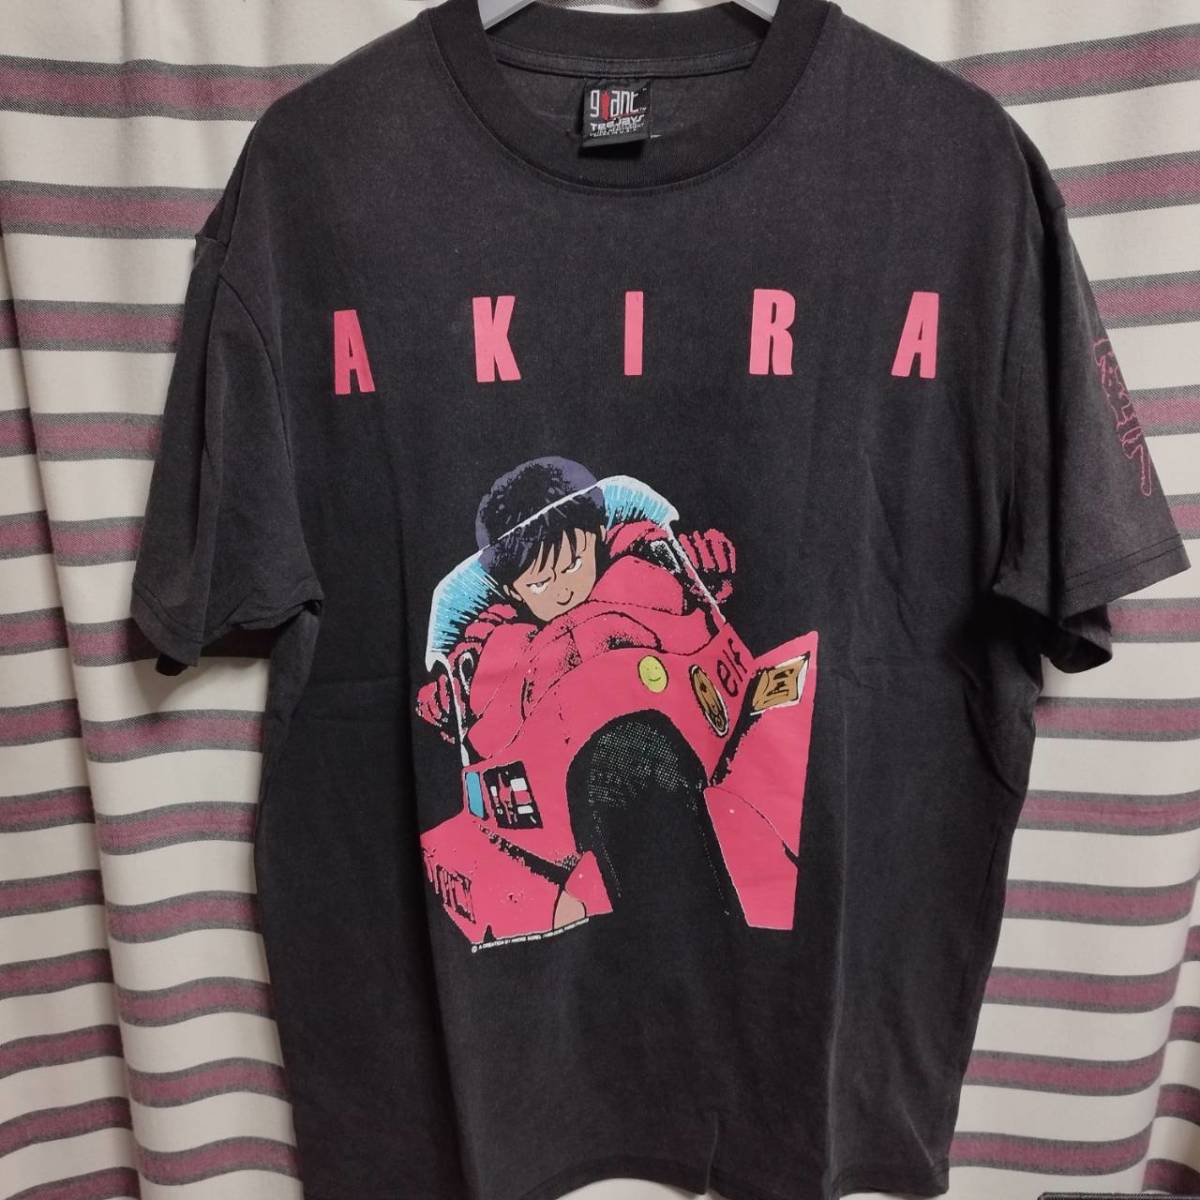 ヤフオク! -「akira tシャツ ビンテージ」の落札相場・落札価格